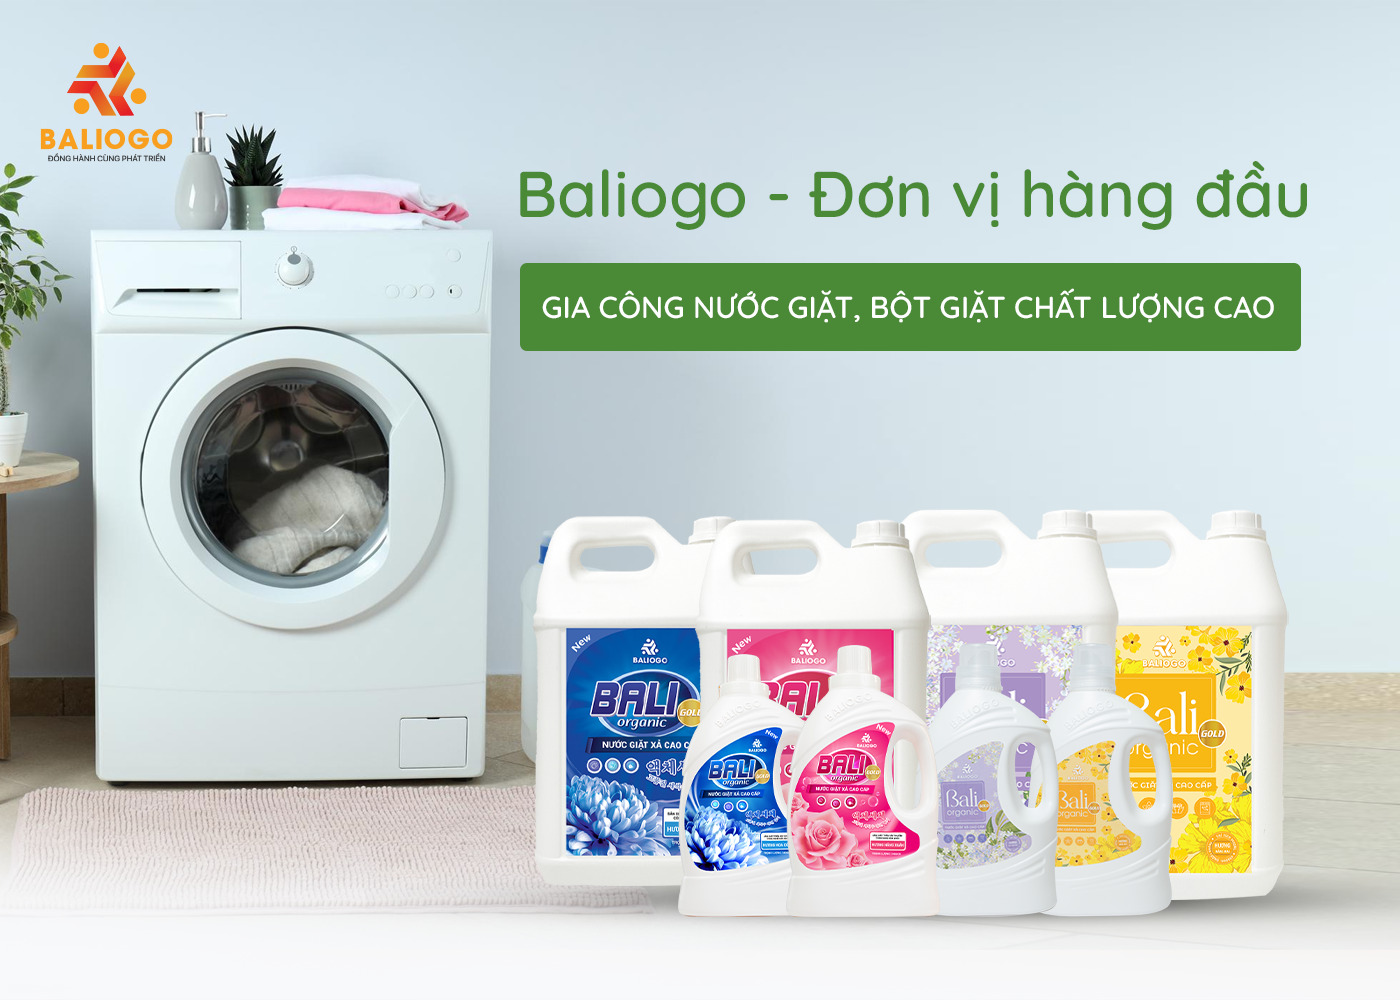 Baliogo - Đơn vị hàng đầu về gia công nước giặt, bột giặt chất lượng cao